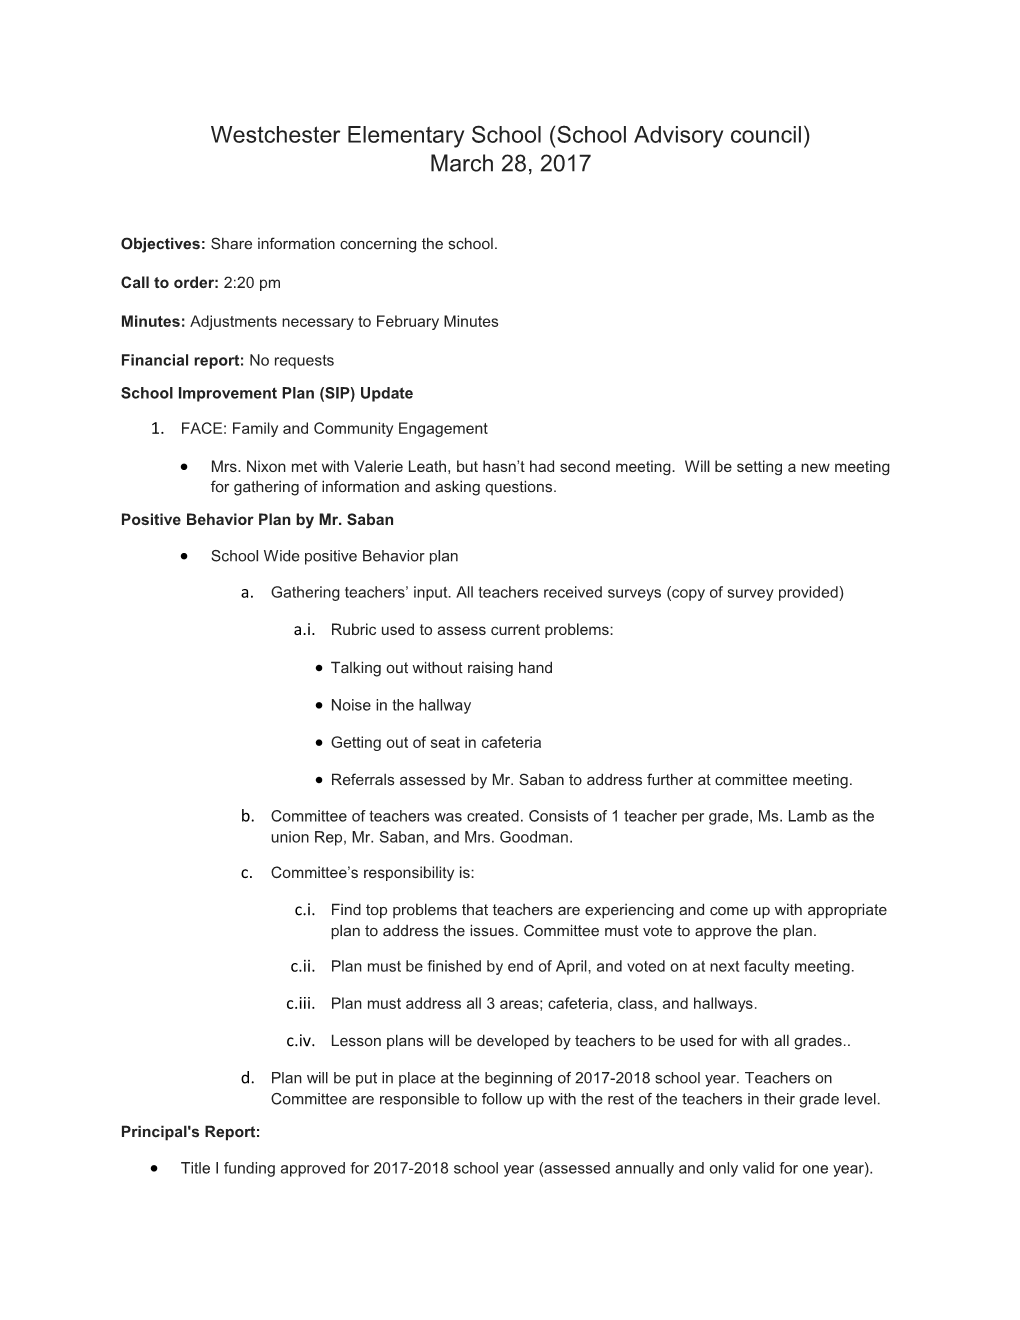 School Improvement Plan (SIP) Update